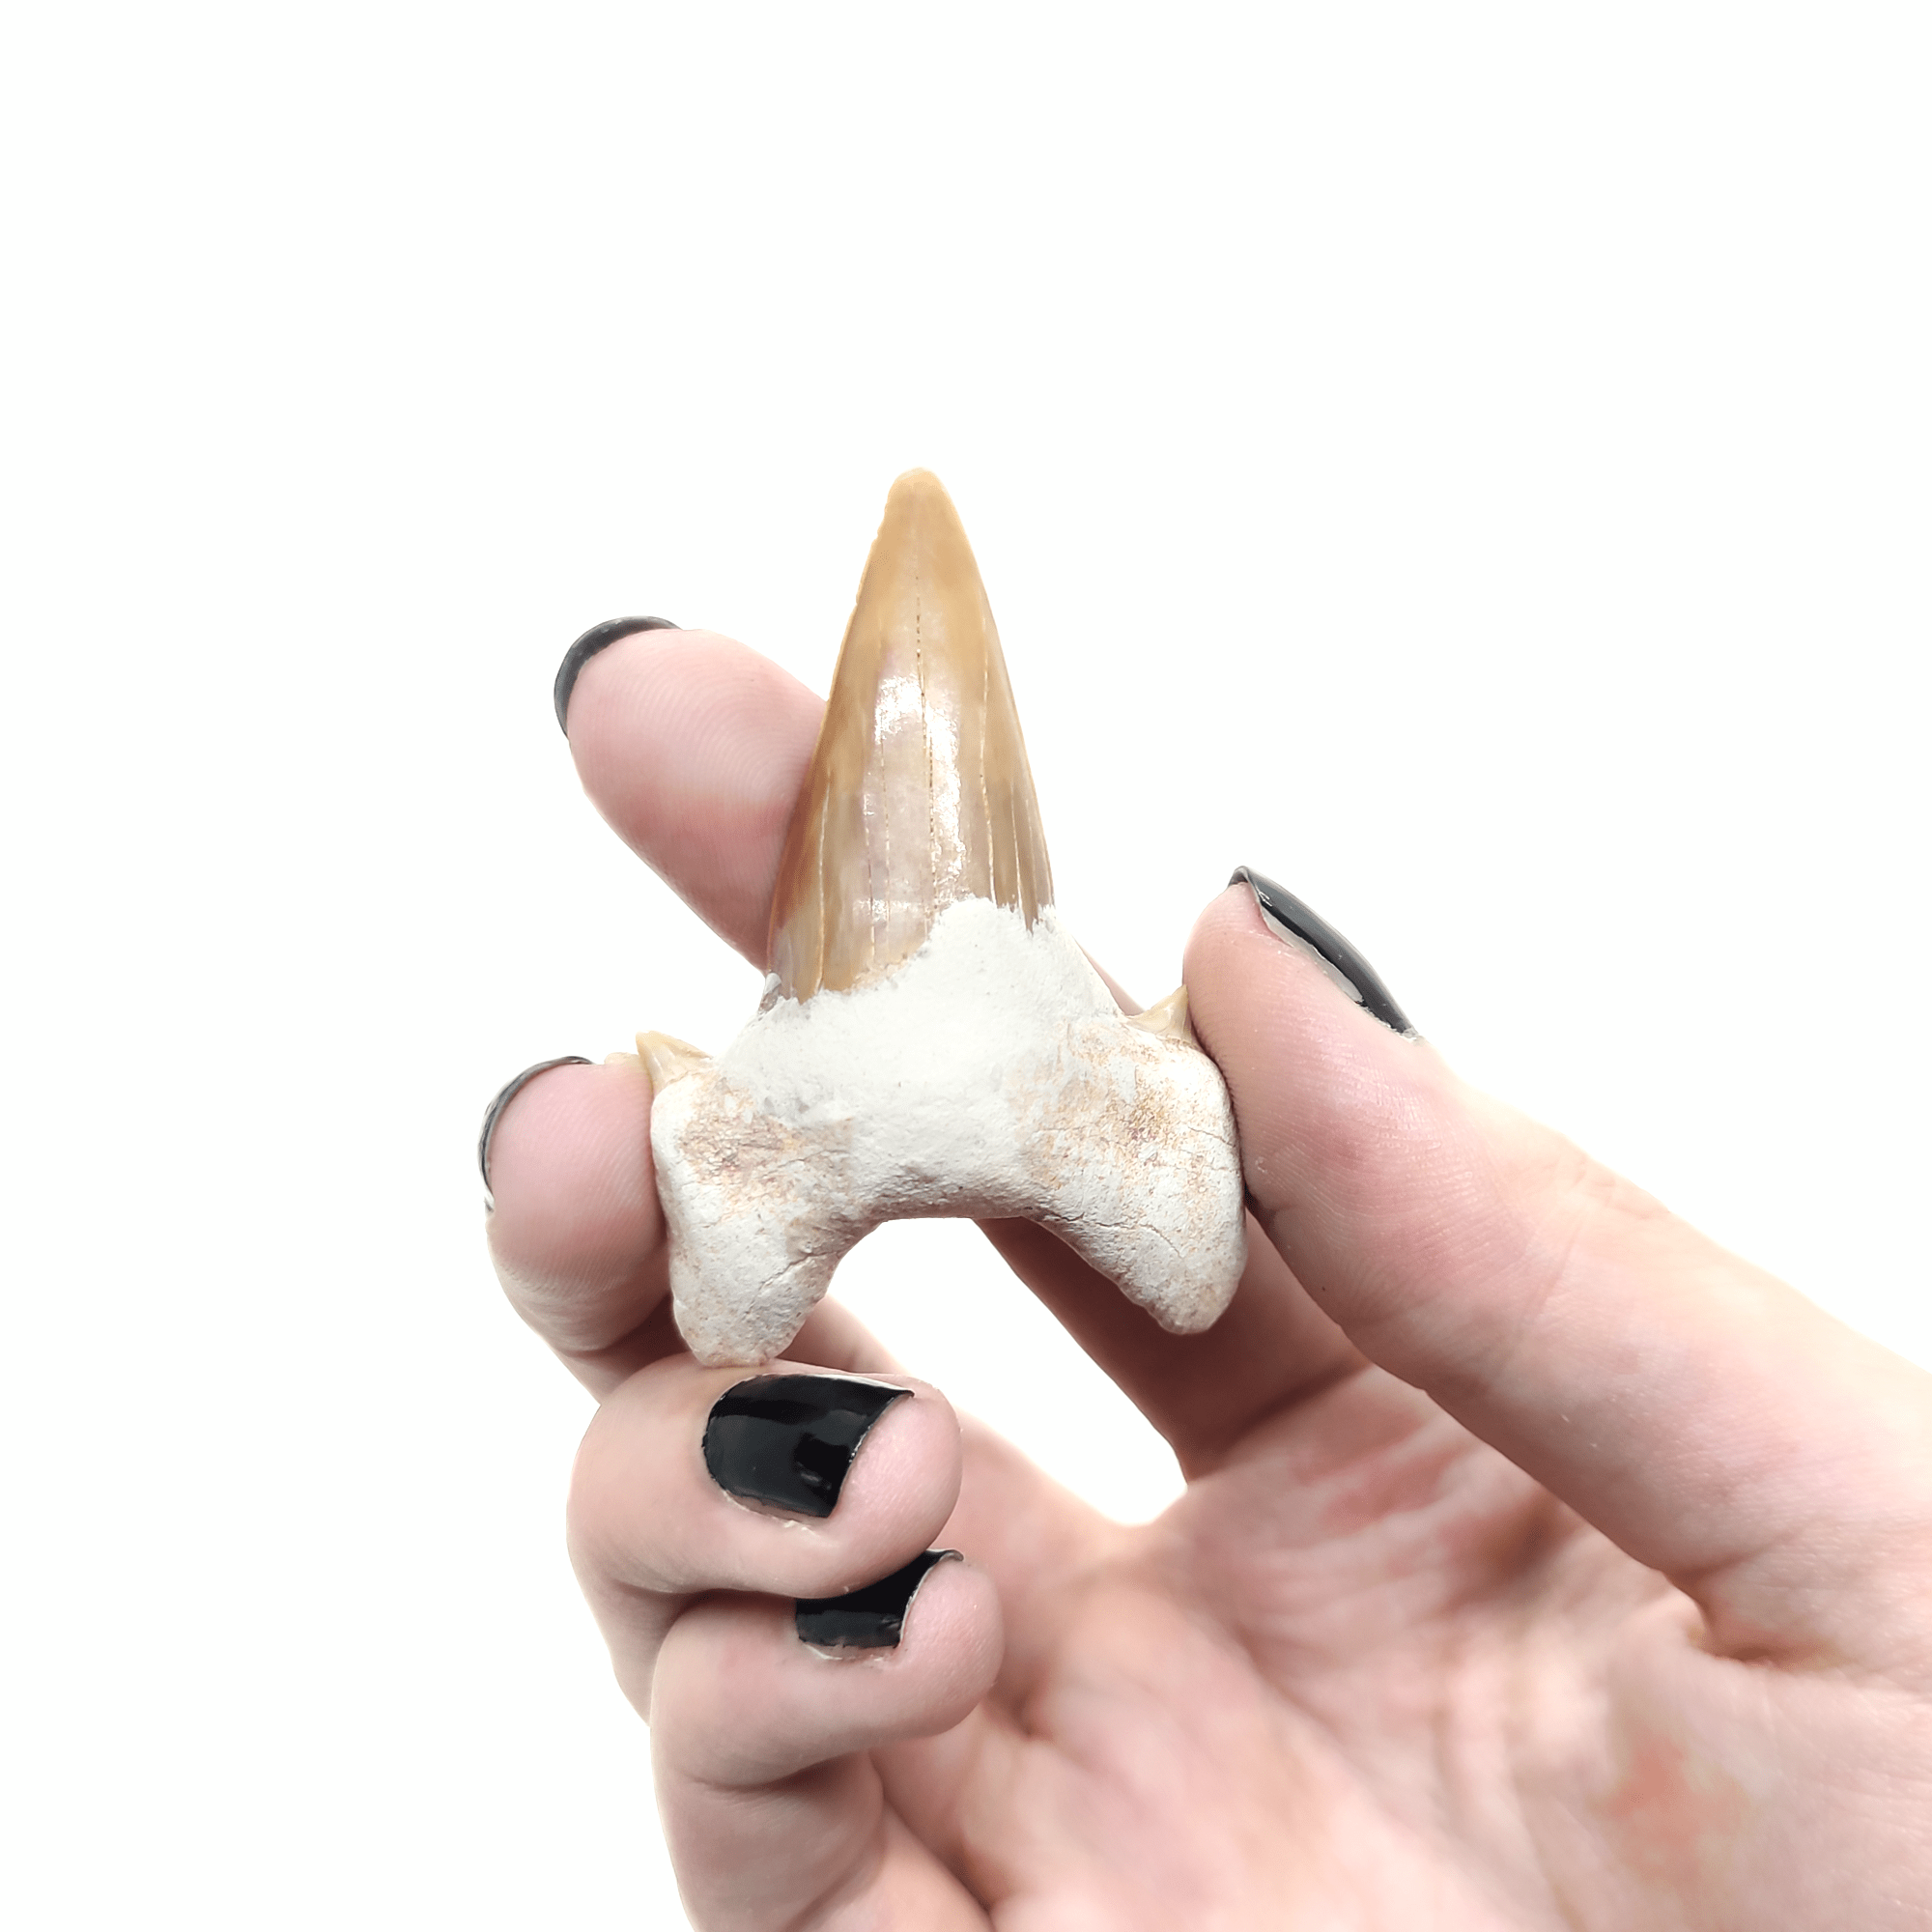 Ein großer fossiler Haizahn, welcher zur Veranschaulichung der Größe von einer Hand gehalten wird.